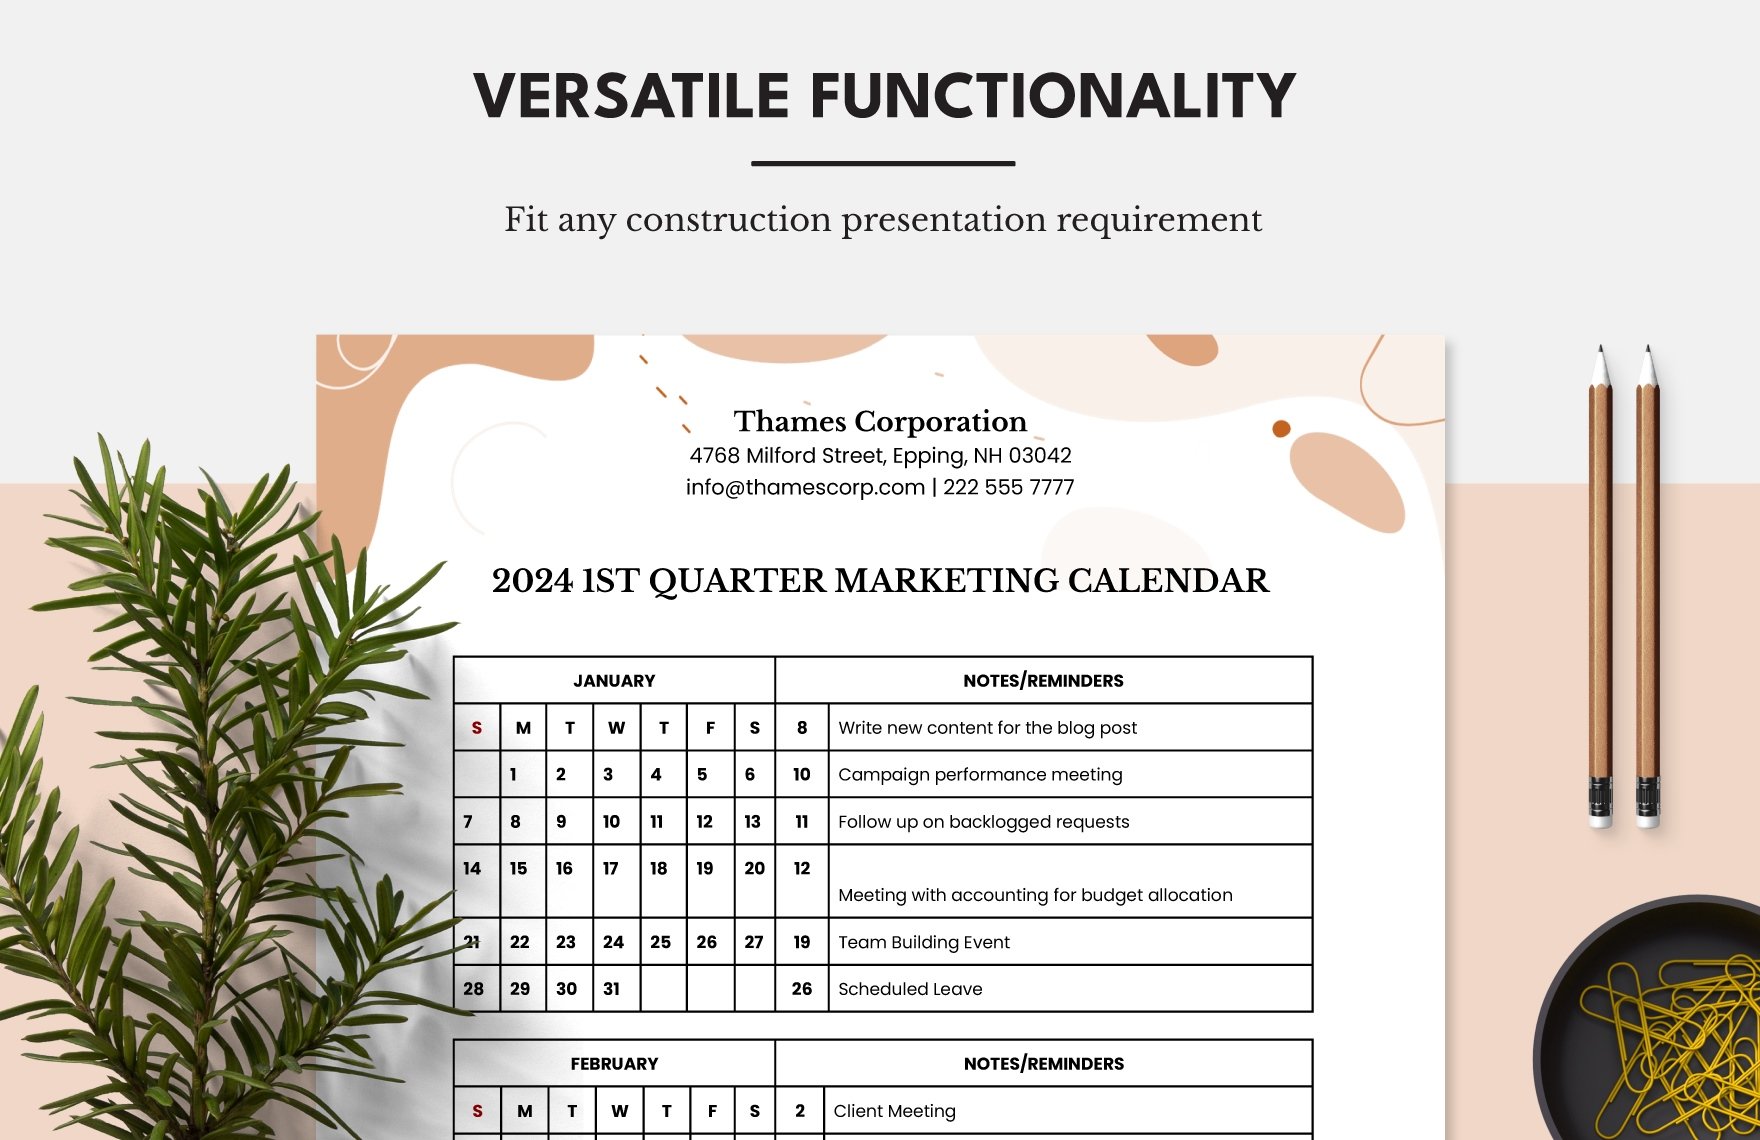 Marketing Plan Calendar Template